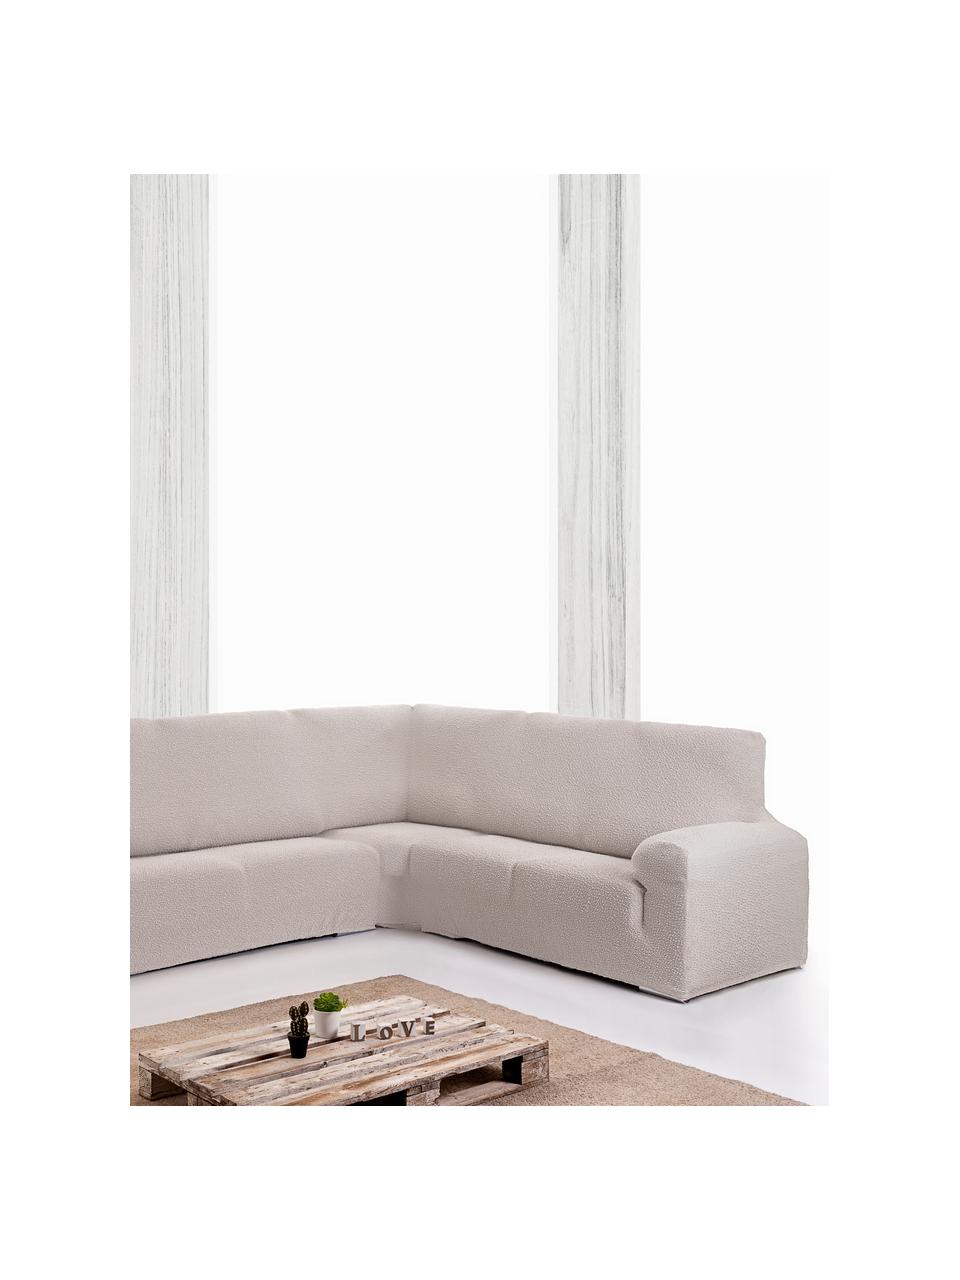 Copertura divano angolare Roc, 55% poliestere, 35% cotone, 10% elastomero, Color crema, Larg. 600 x Alt. 120 cm